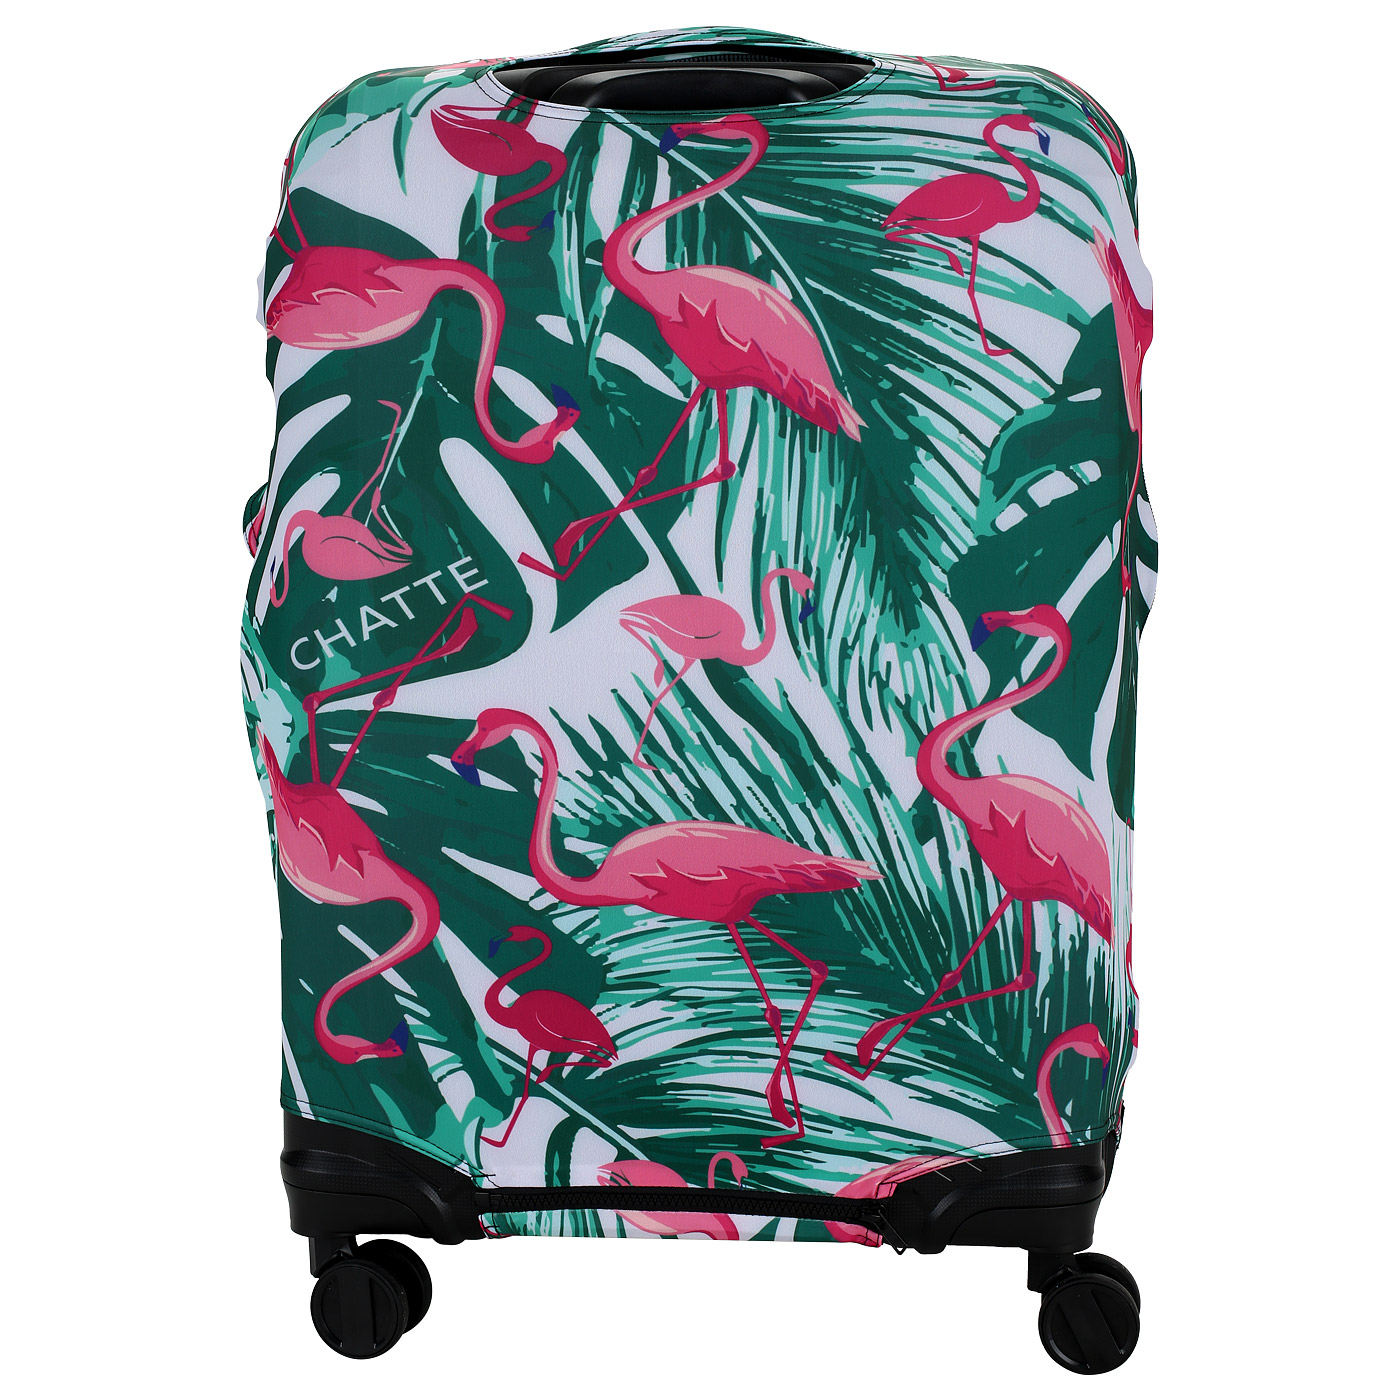 Чехол для чемодана с тропическим принтом Chatte Flamingo